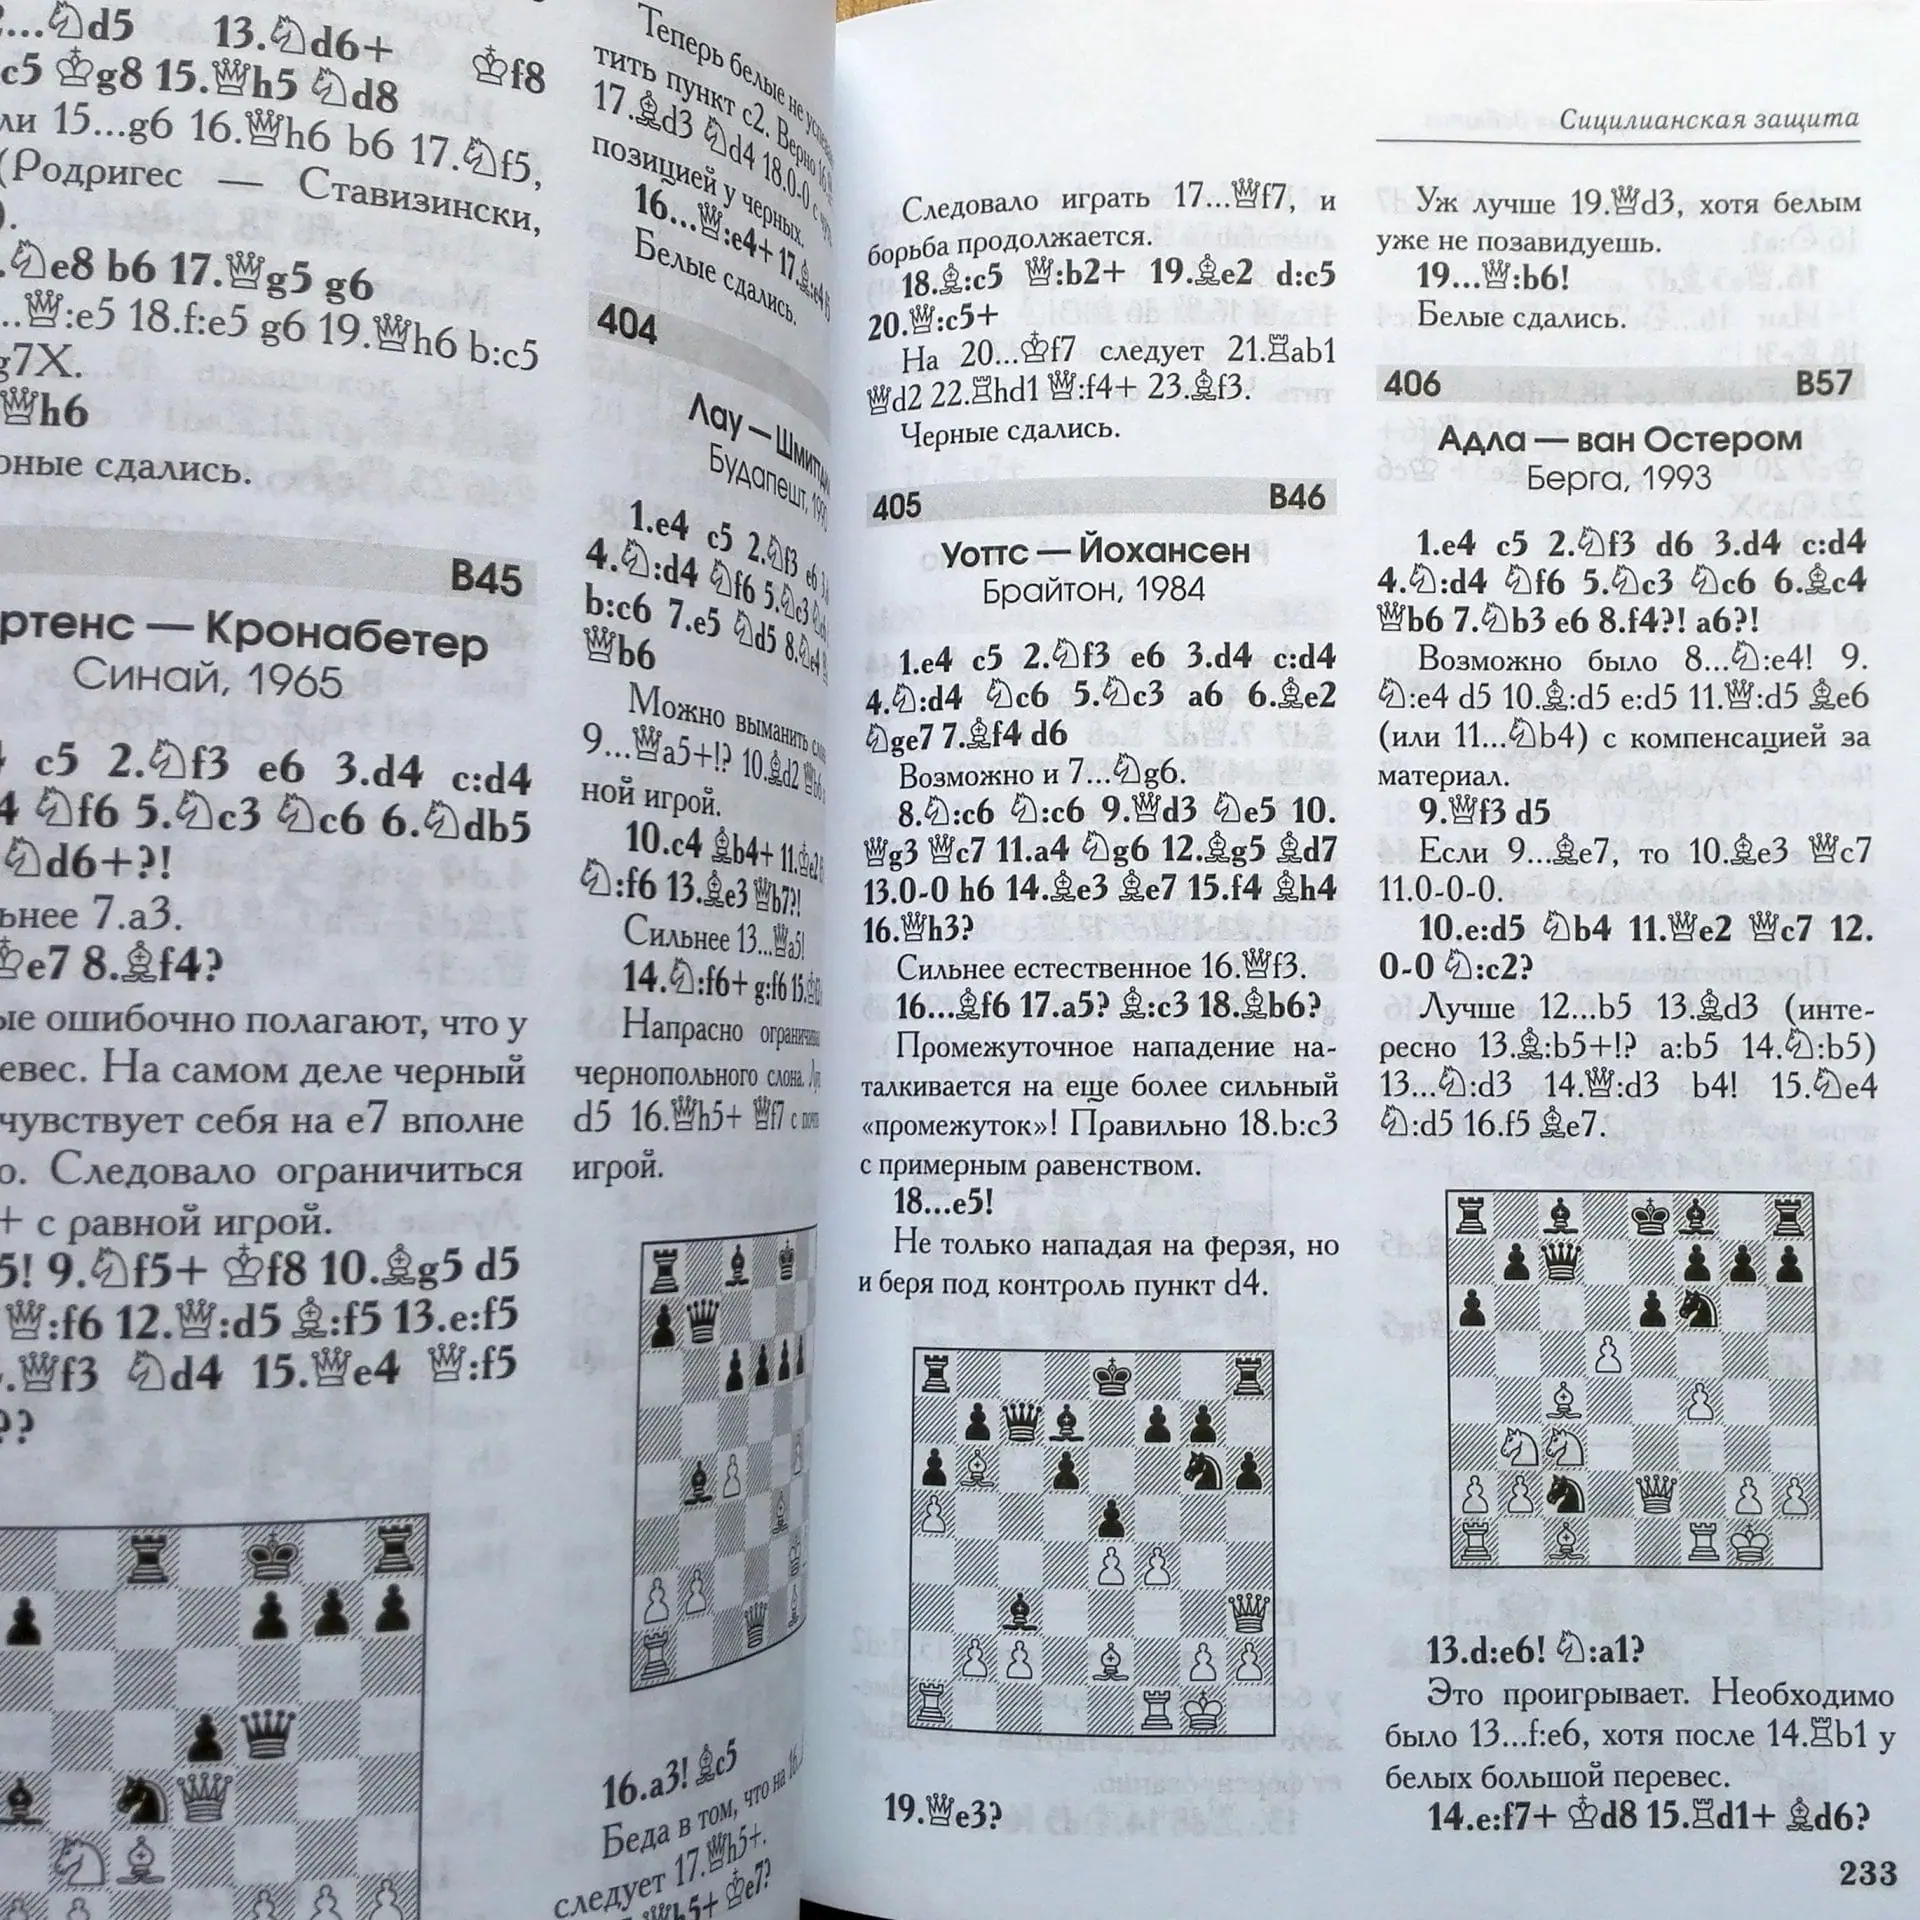 encyclopaedia of chess openings.jpg